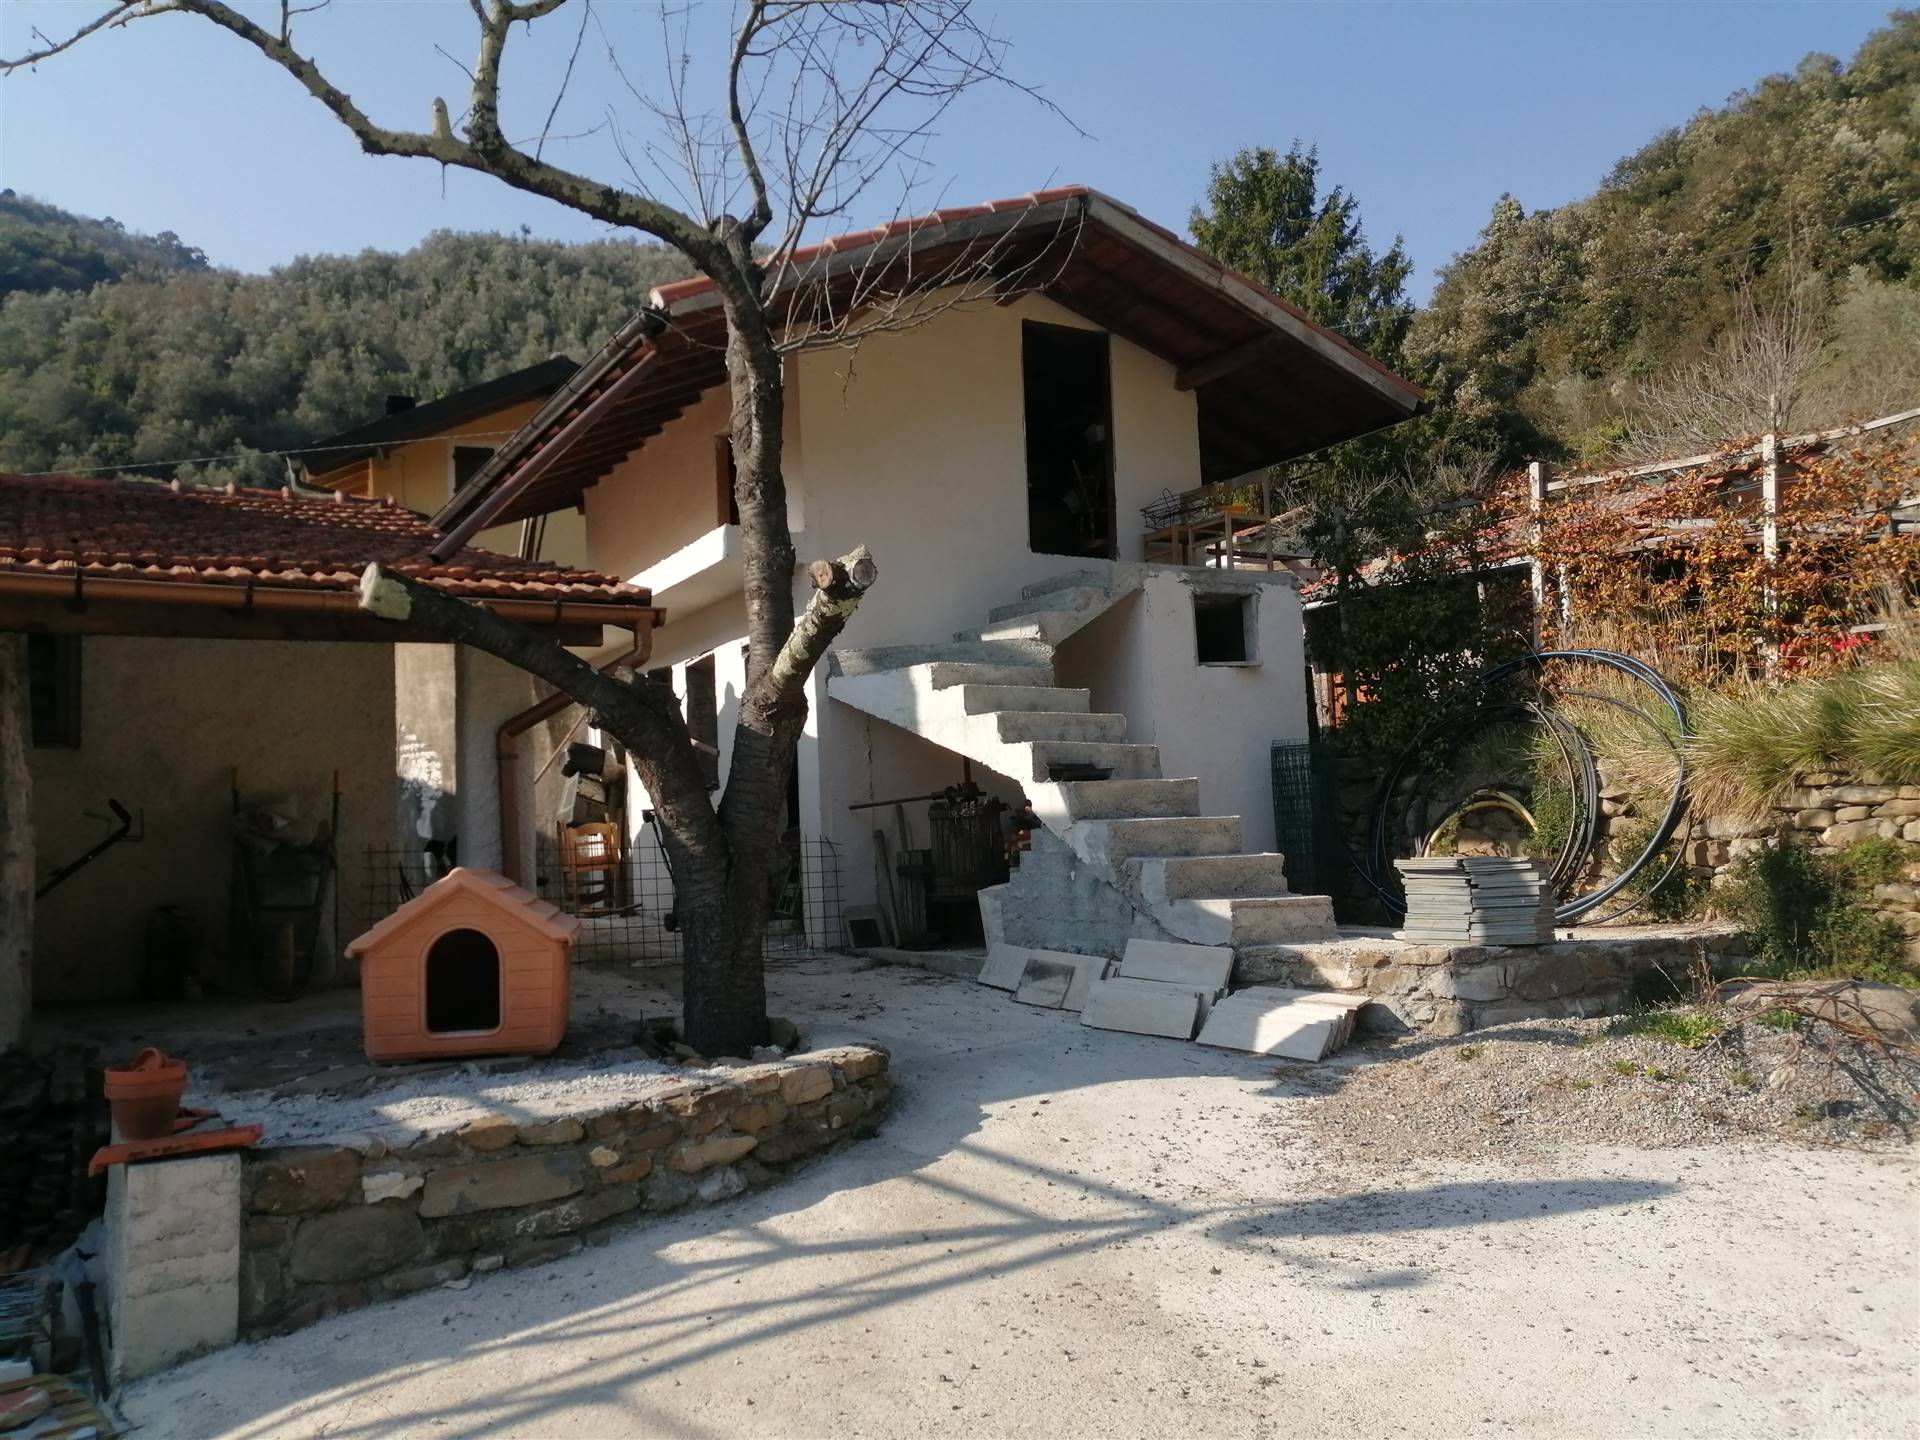 Villa in vendita a Pigna, 5 locali, prezzo € 260.000 | PortaleAgenzieImmobiliari.it